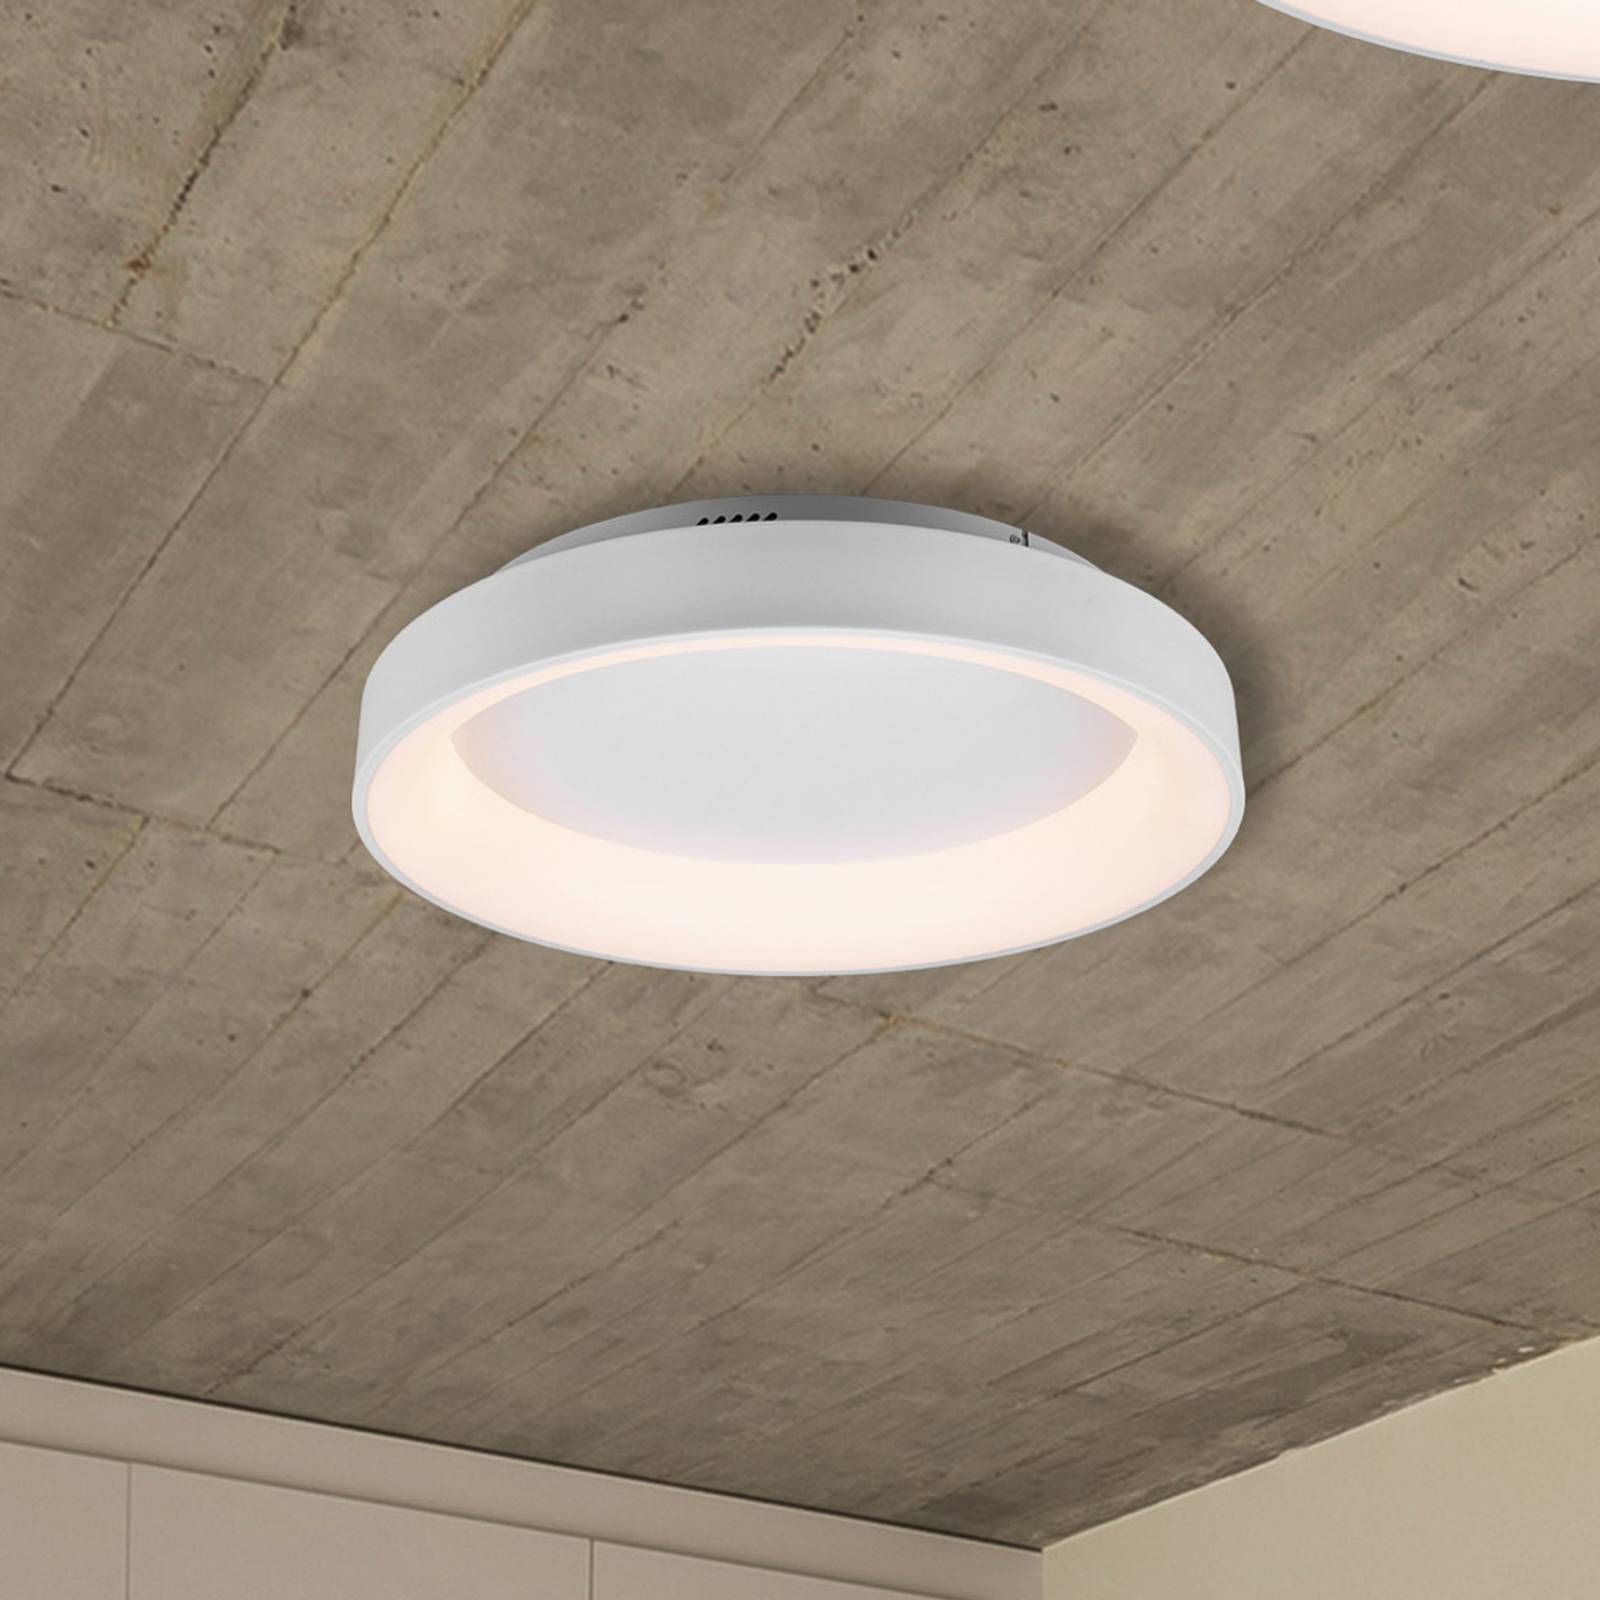 LED plafondlamp Girona met afstandsbediening, wit